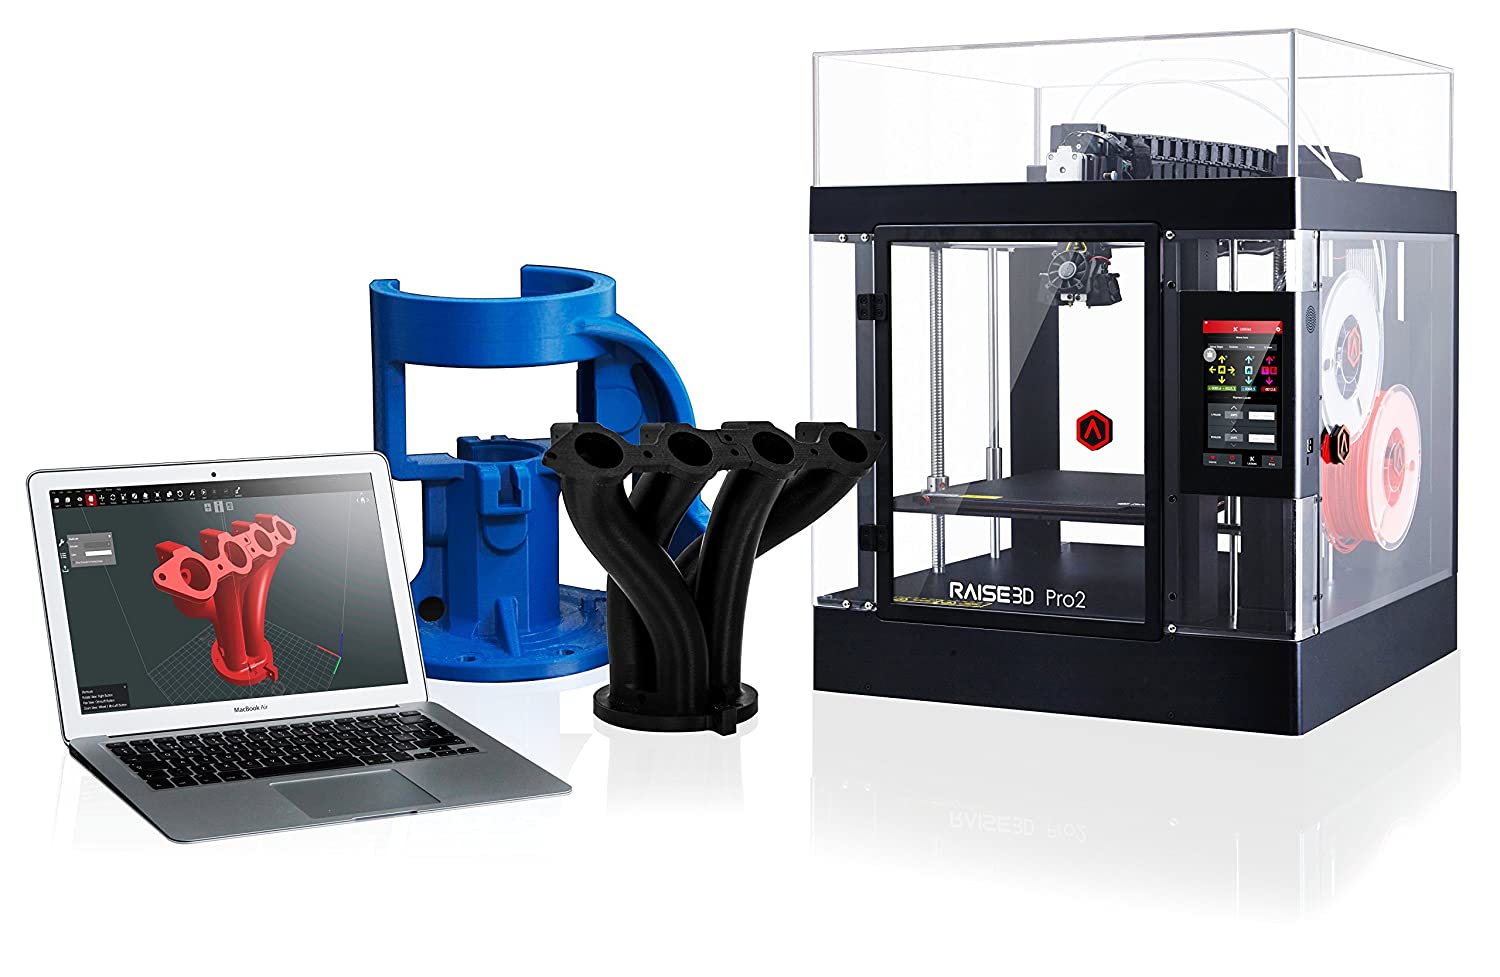 Raise 3D Pro2 3D Printer